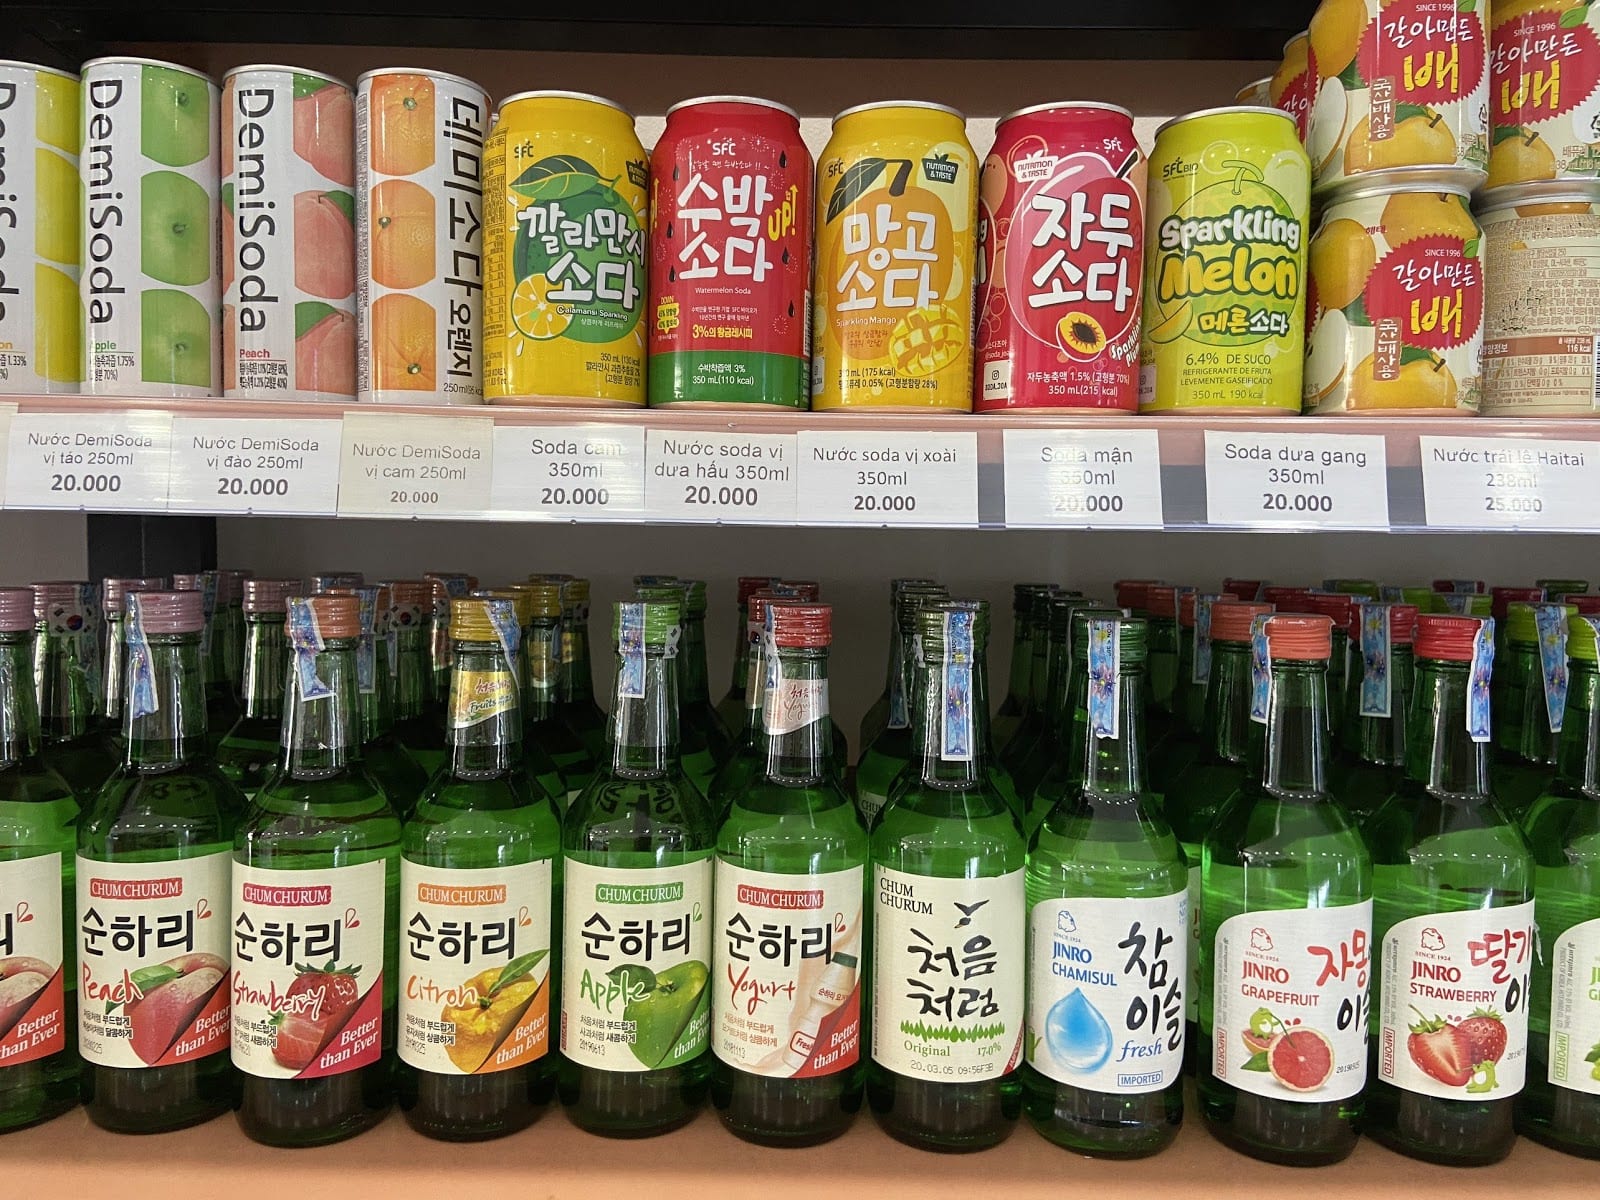 soju korea, rượu soju hàn quốc, soju trái cây, soju hàn quốc, rượu soju hàn quốc giá bao nhiêu, soju pha, các loại rượu soju hàn quốc, soju cam, rượu soju hàn quốc bao nhiêu độ, mua rượu soju hàn quốc, nơi bán rượu soju hàn quốc, rượu soju hàn quốc vinmart, soju các vị, giá bán rượu soju hàn quốc, soju sor, cách uống rượu soju hàn quốc